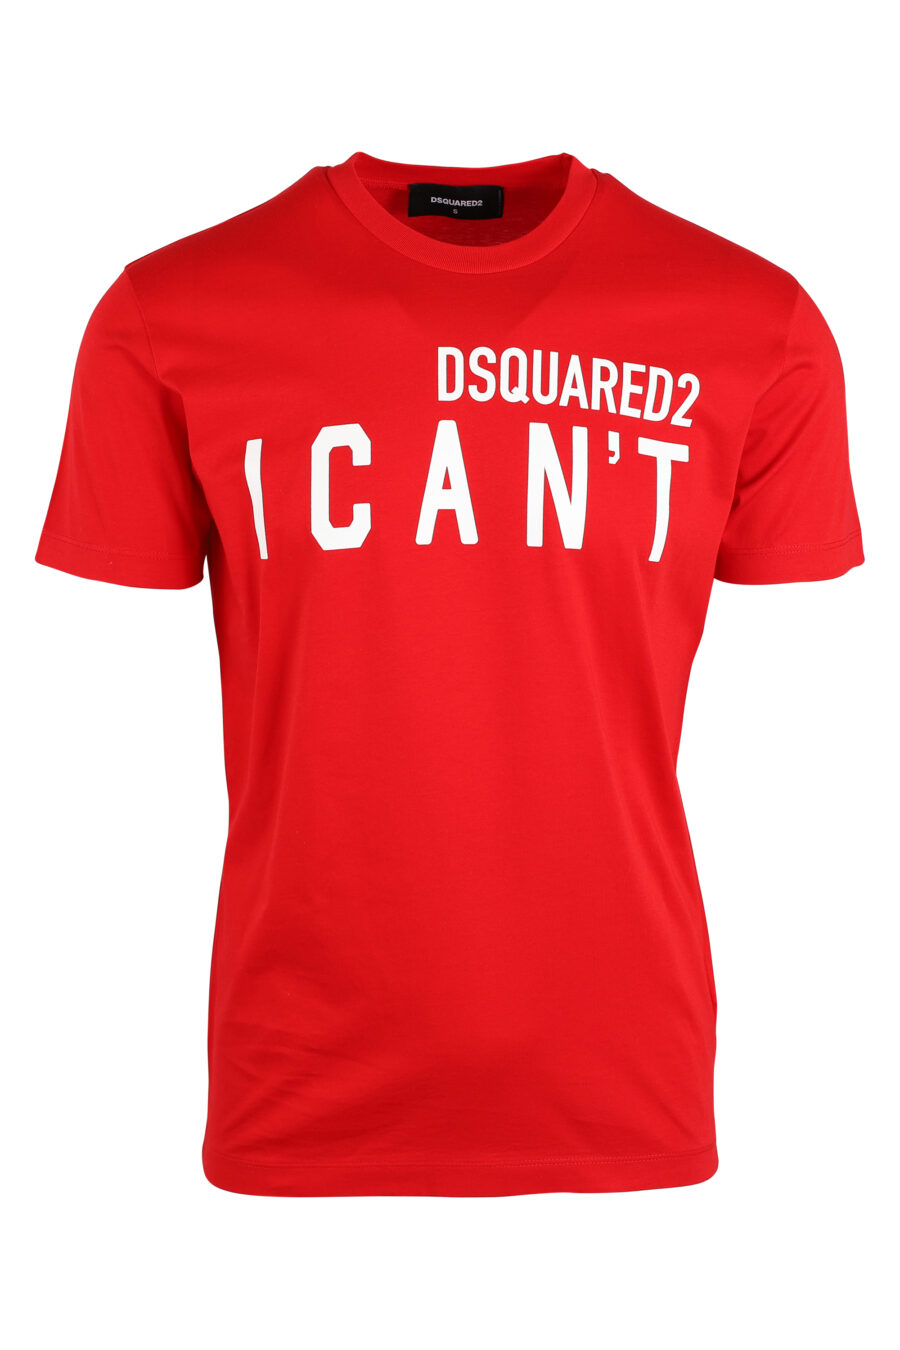 T-shirt vermelha com maxilogo "i can't" - IMG 0638